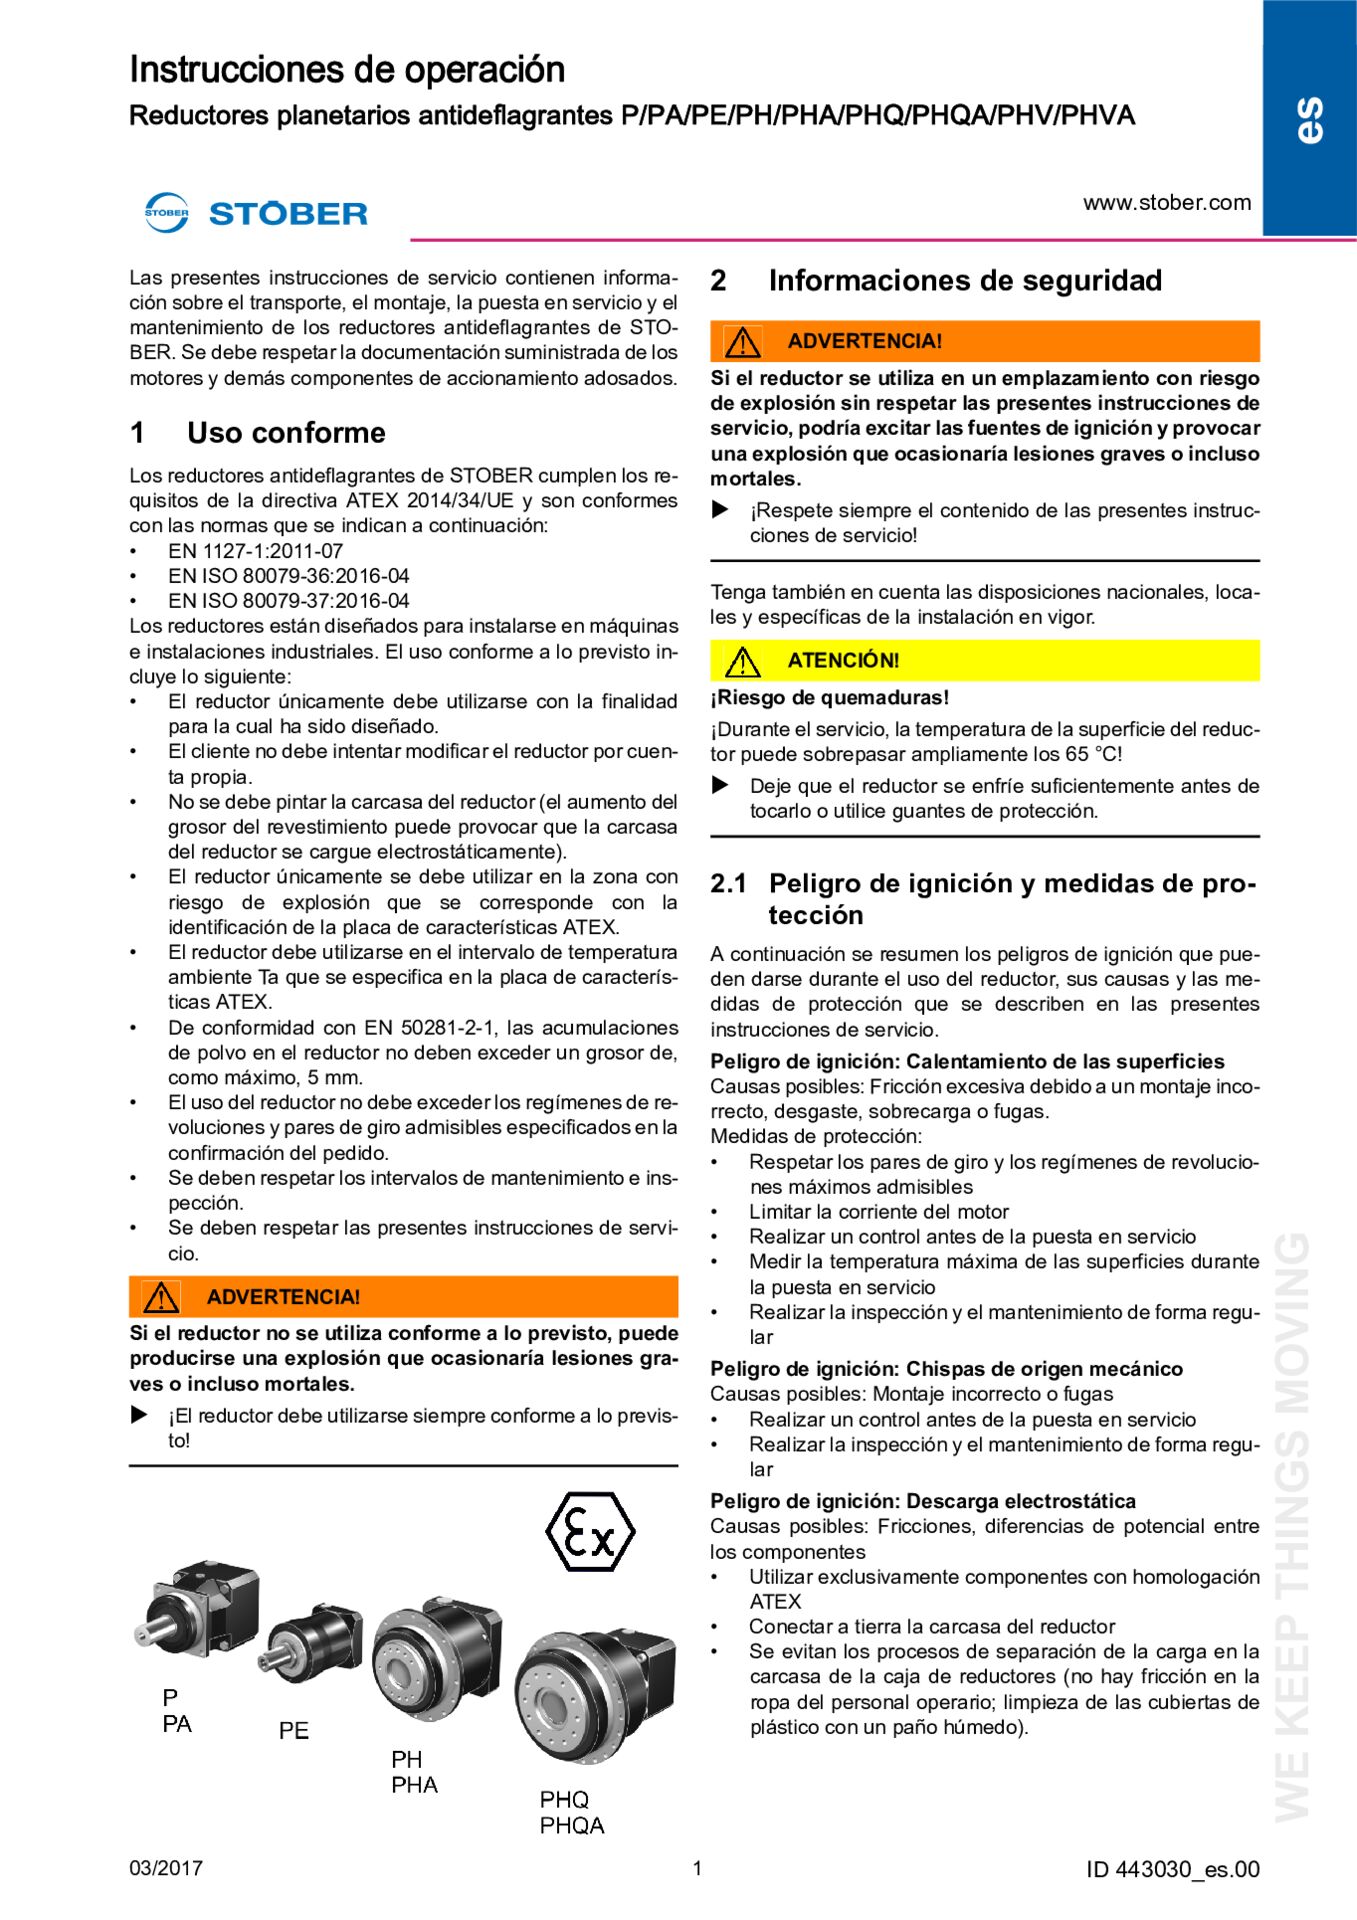 Instructions de service Réducteurs planétaires antidéflagrants (ATEX) P/PA/PE/PH/PHA/PHQ/PHQA/PHV/PHVA